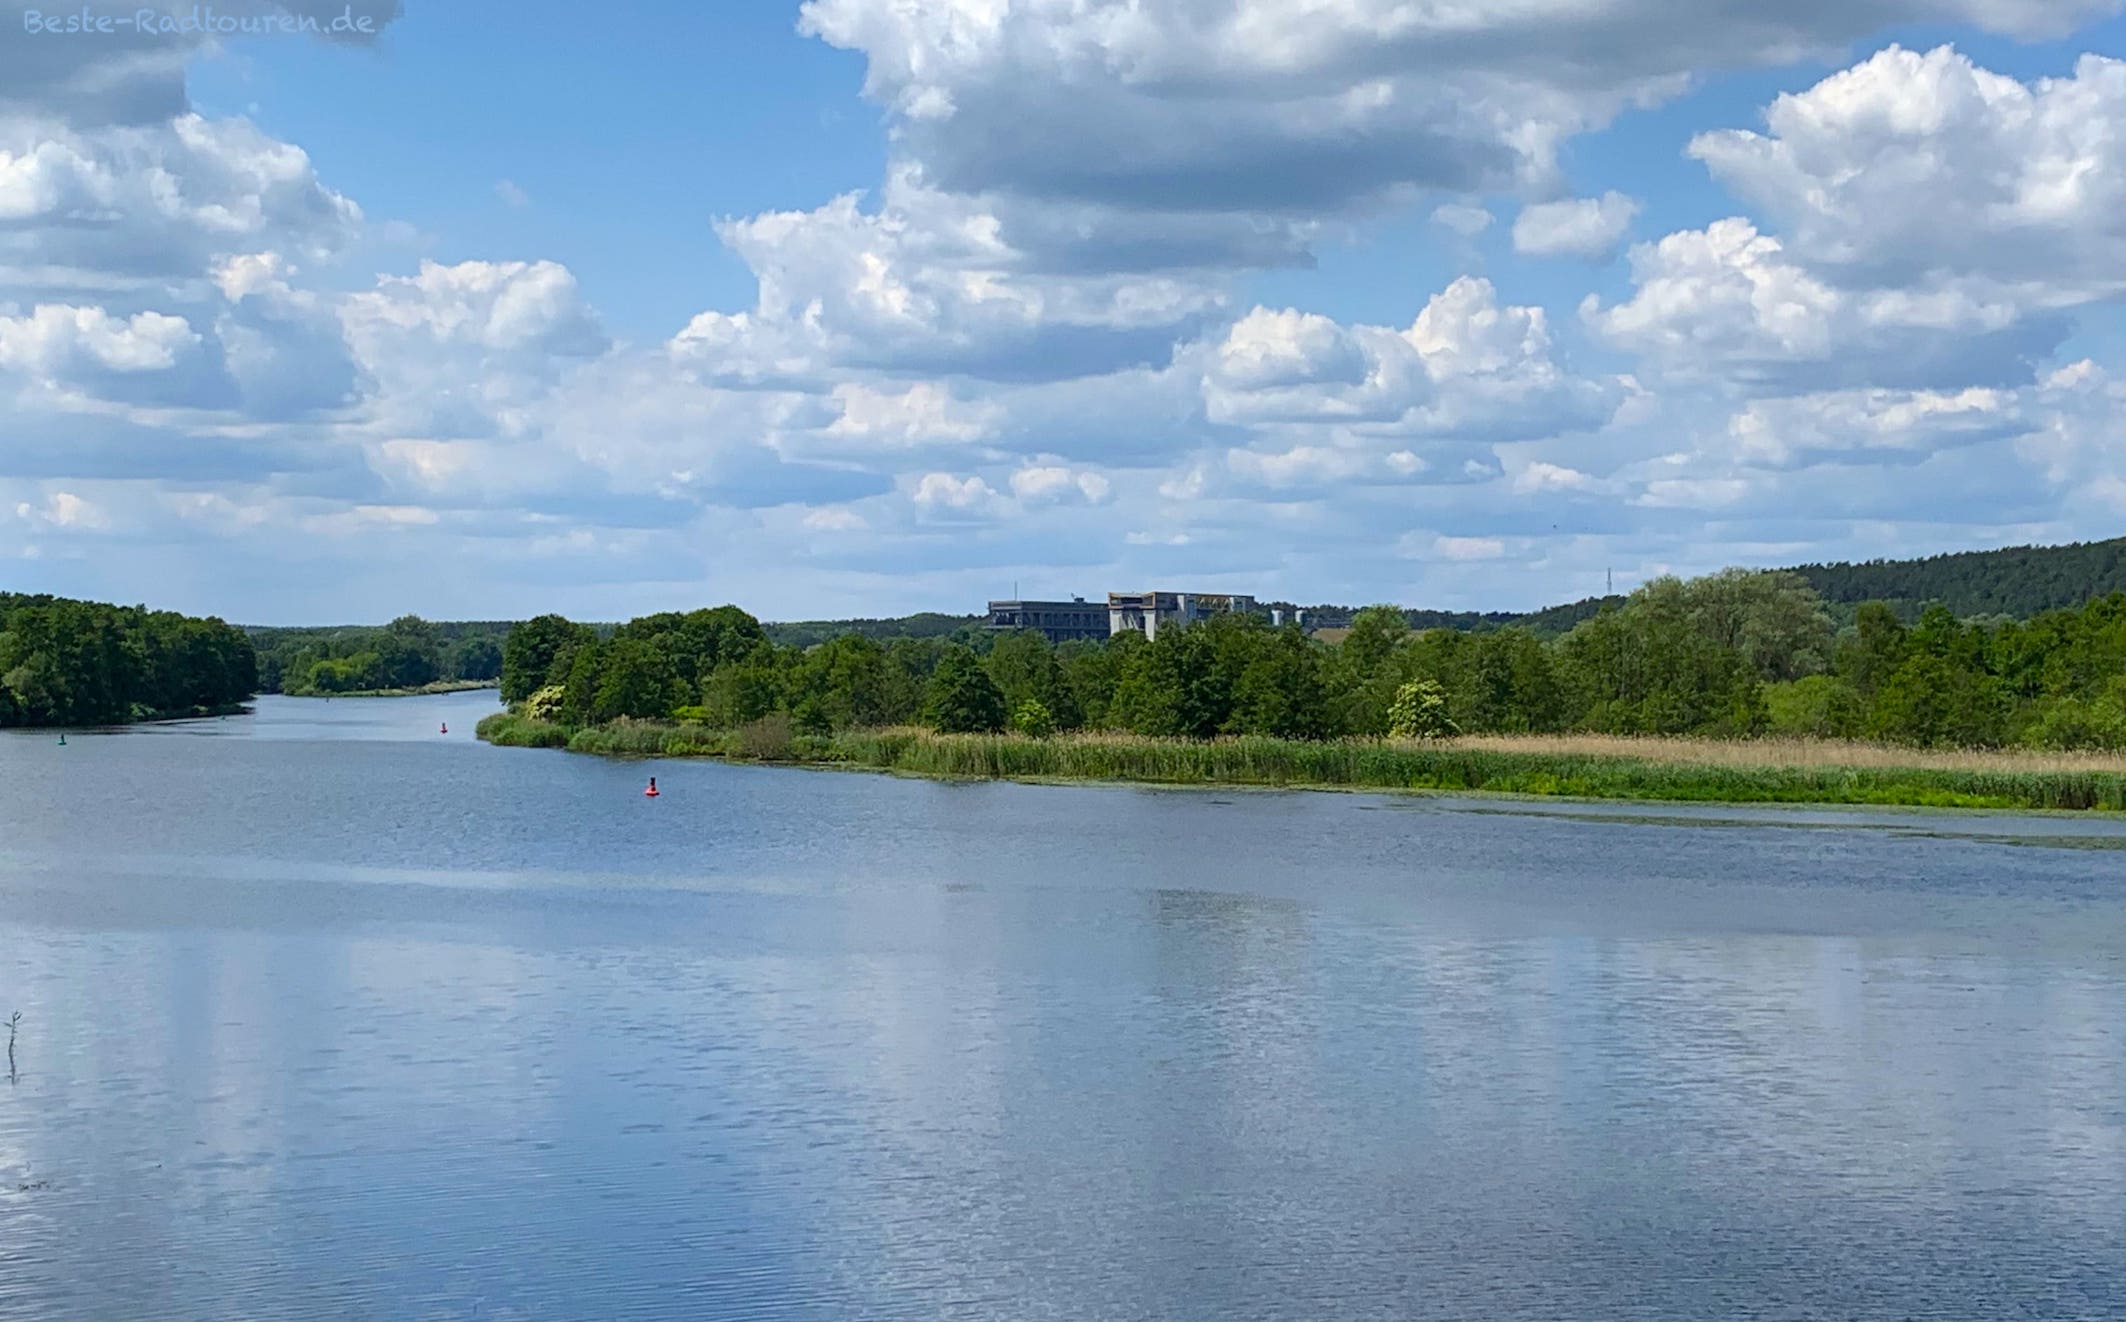 Oder-Havel-Kanal bei Liepe, altes und neues Schiffshebewerk Niederfinow